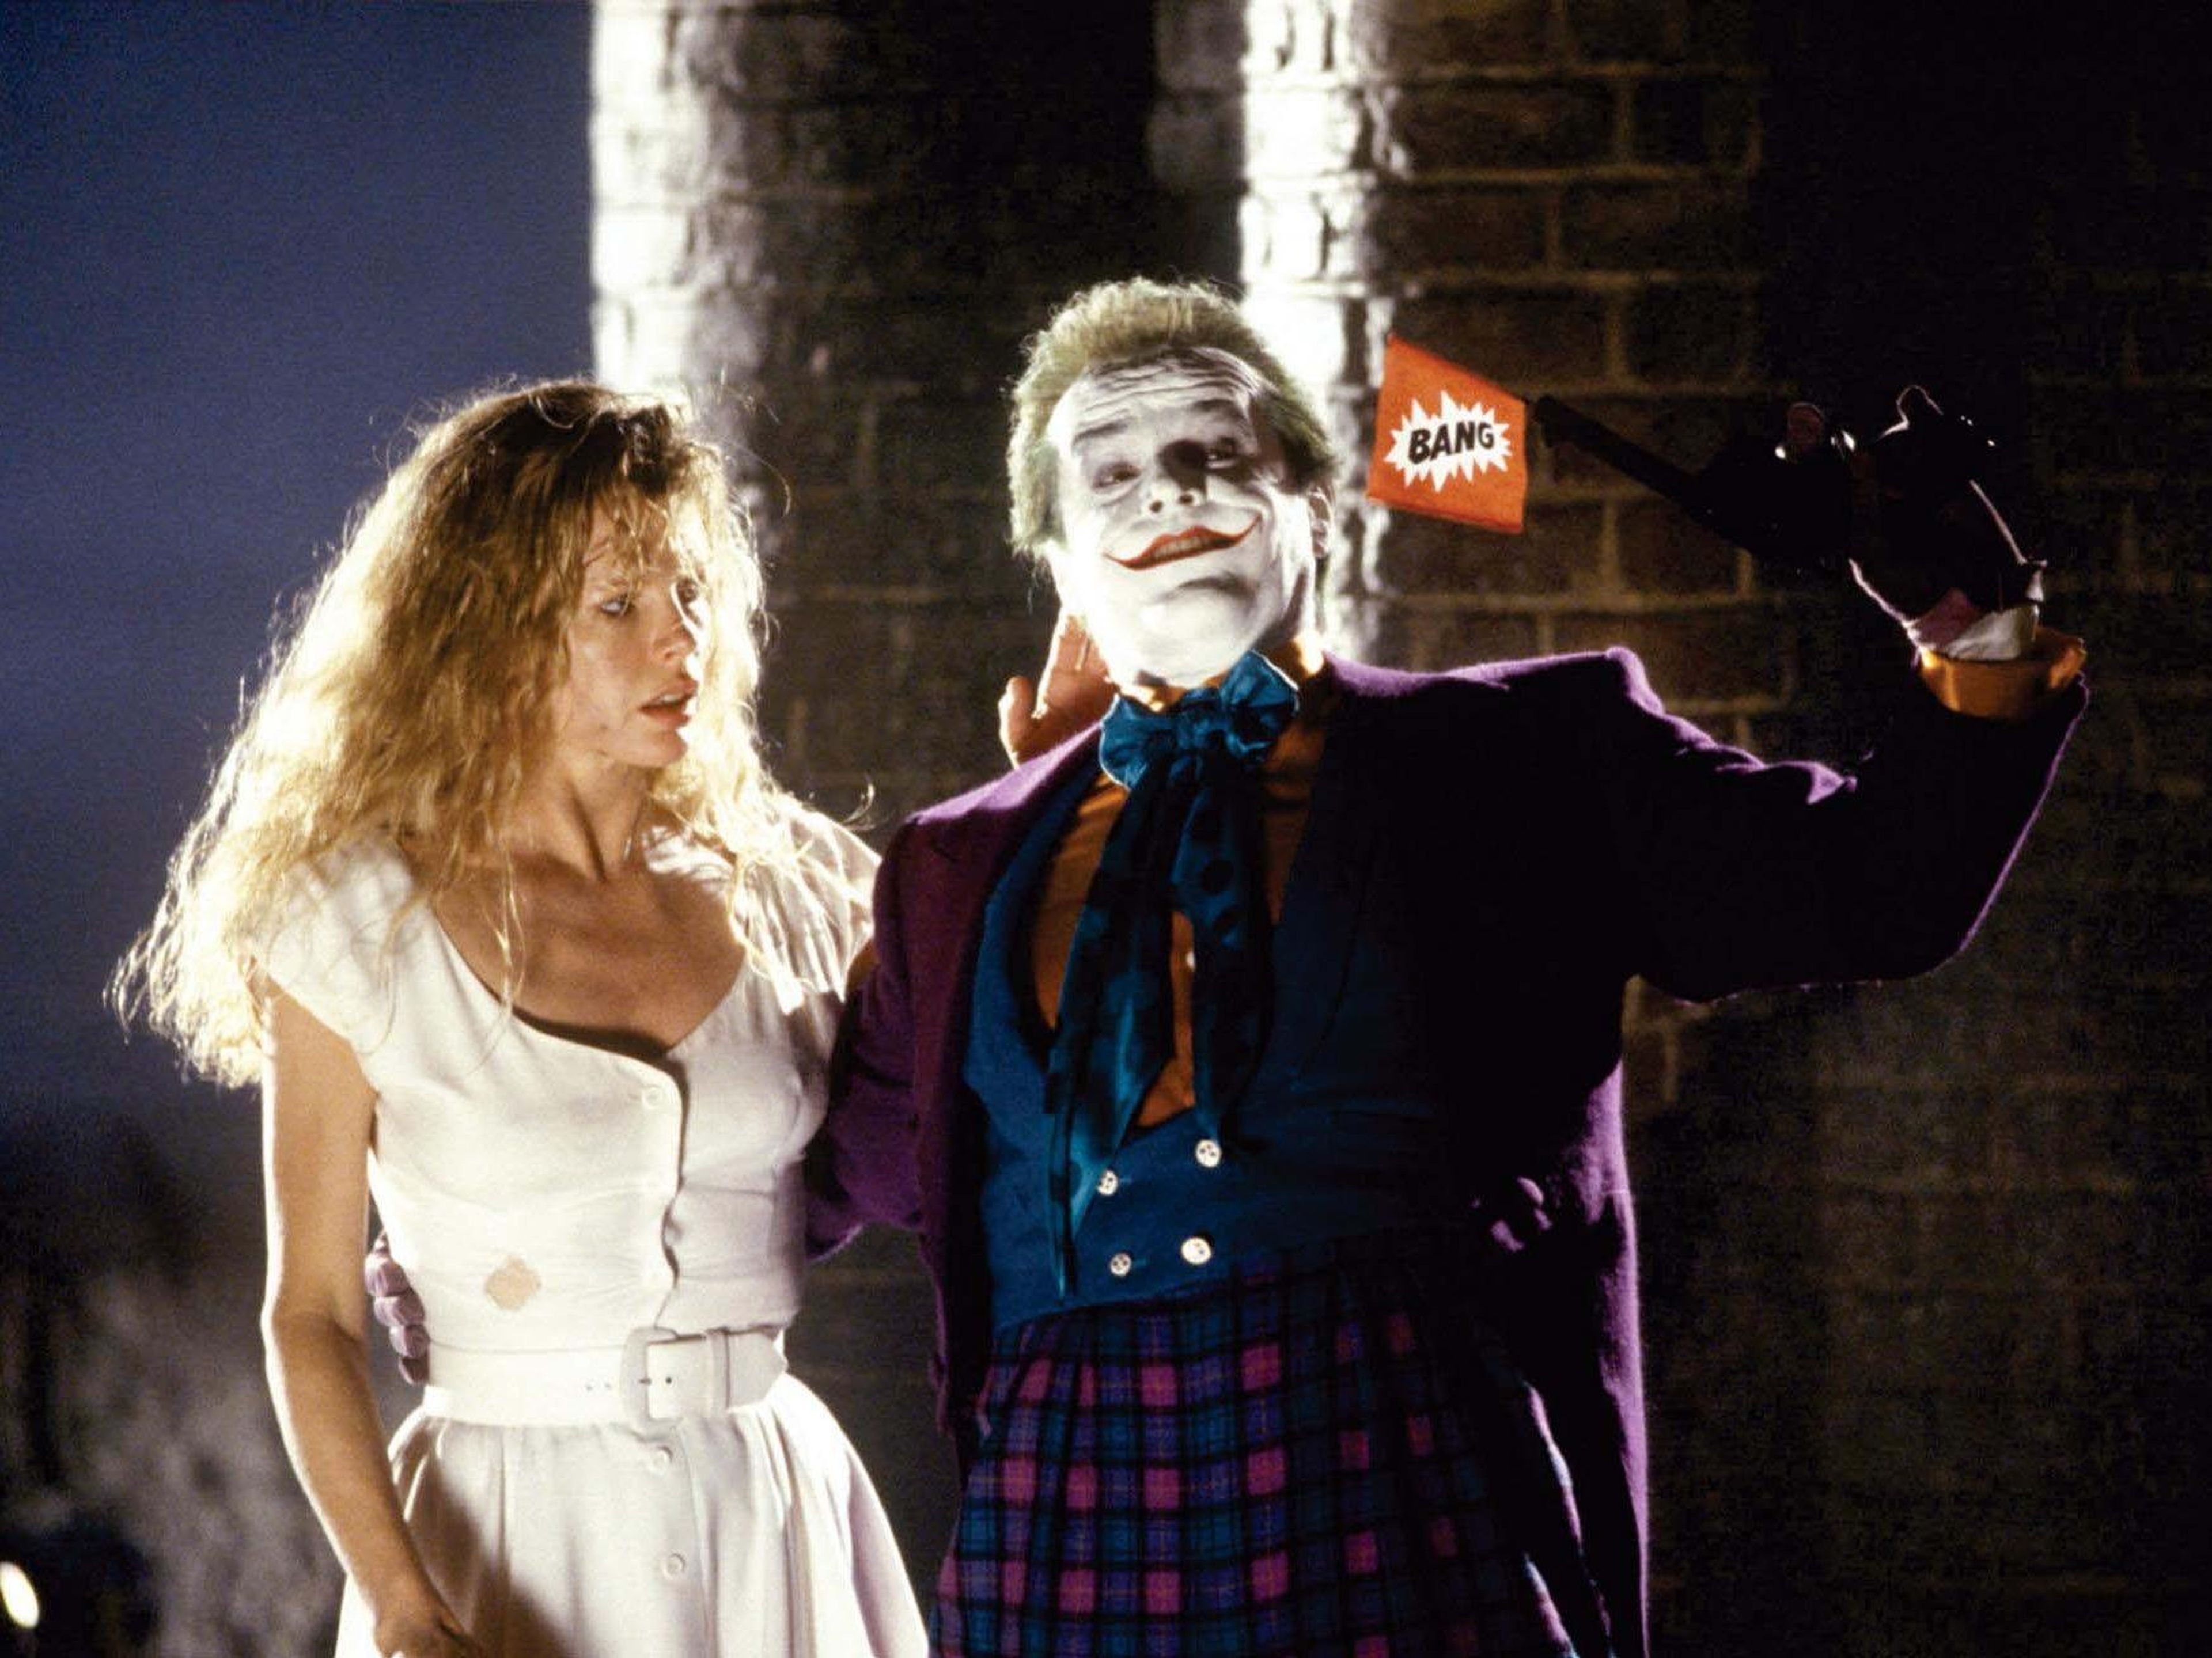 11. Jack Nicholson as The Joker in "Batman"